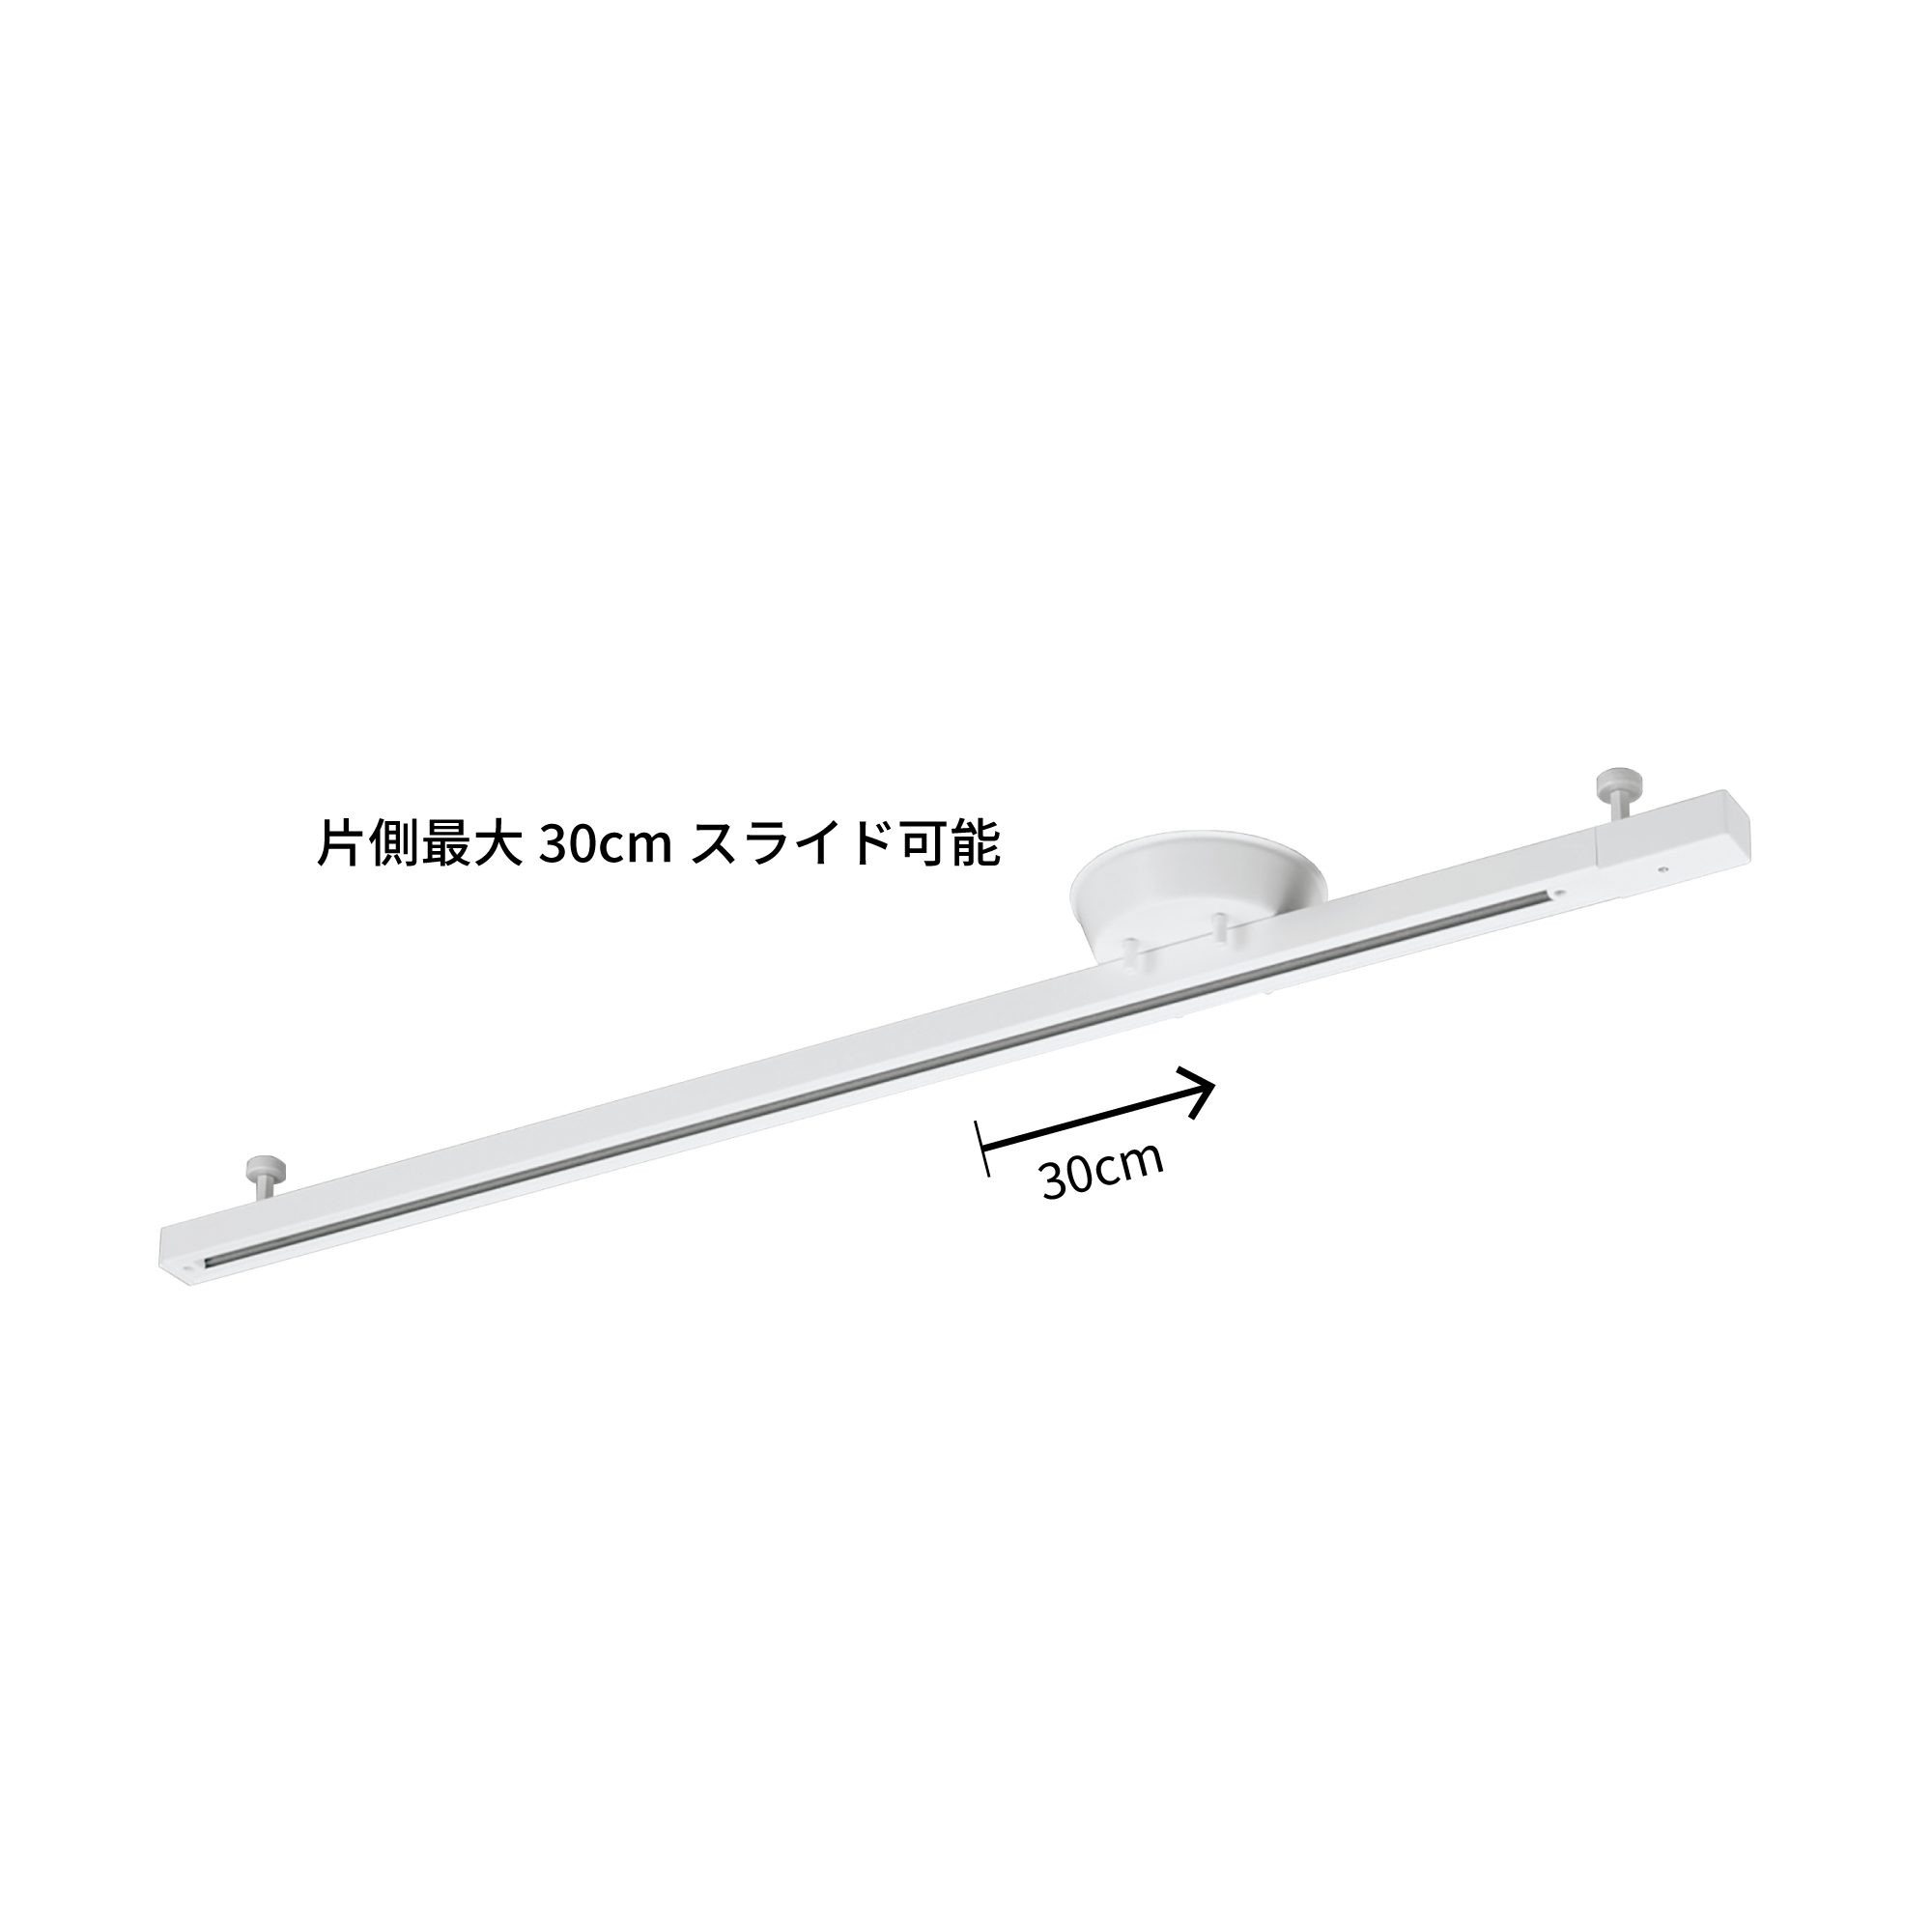 山田照明 取付簡易型ライティングダクト TG-248 - 4